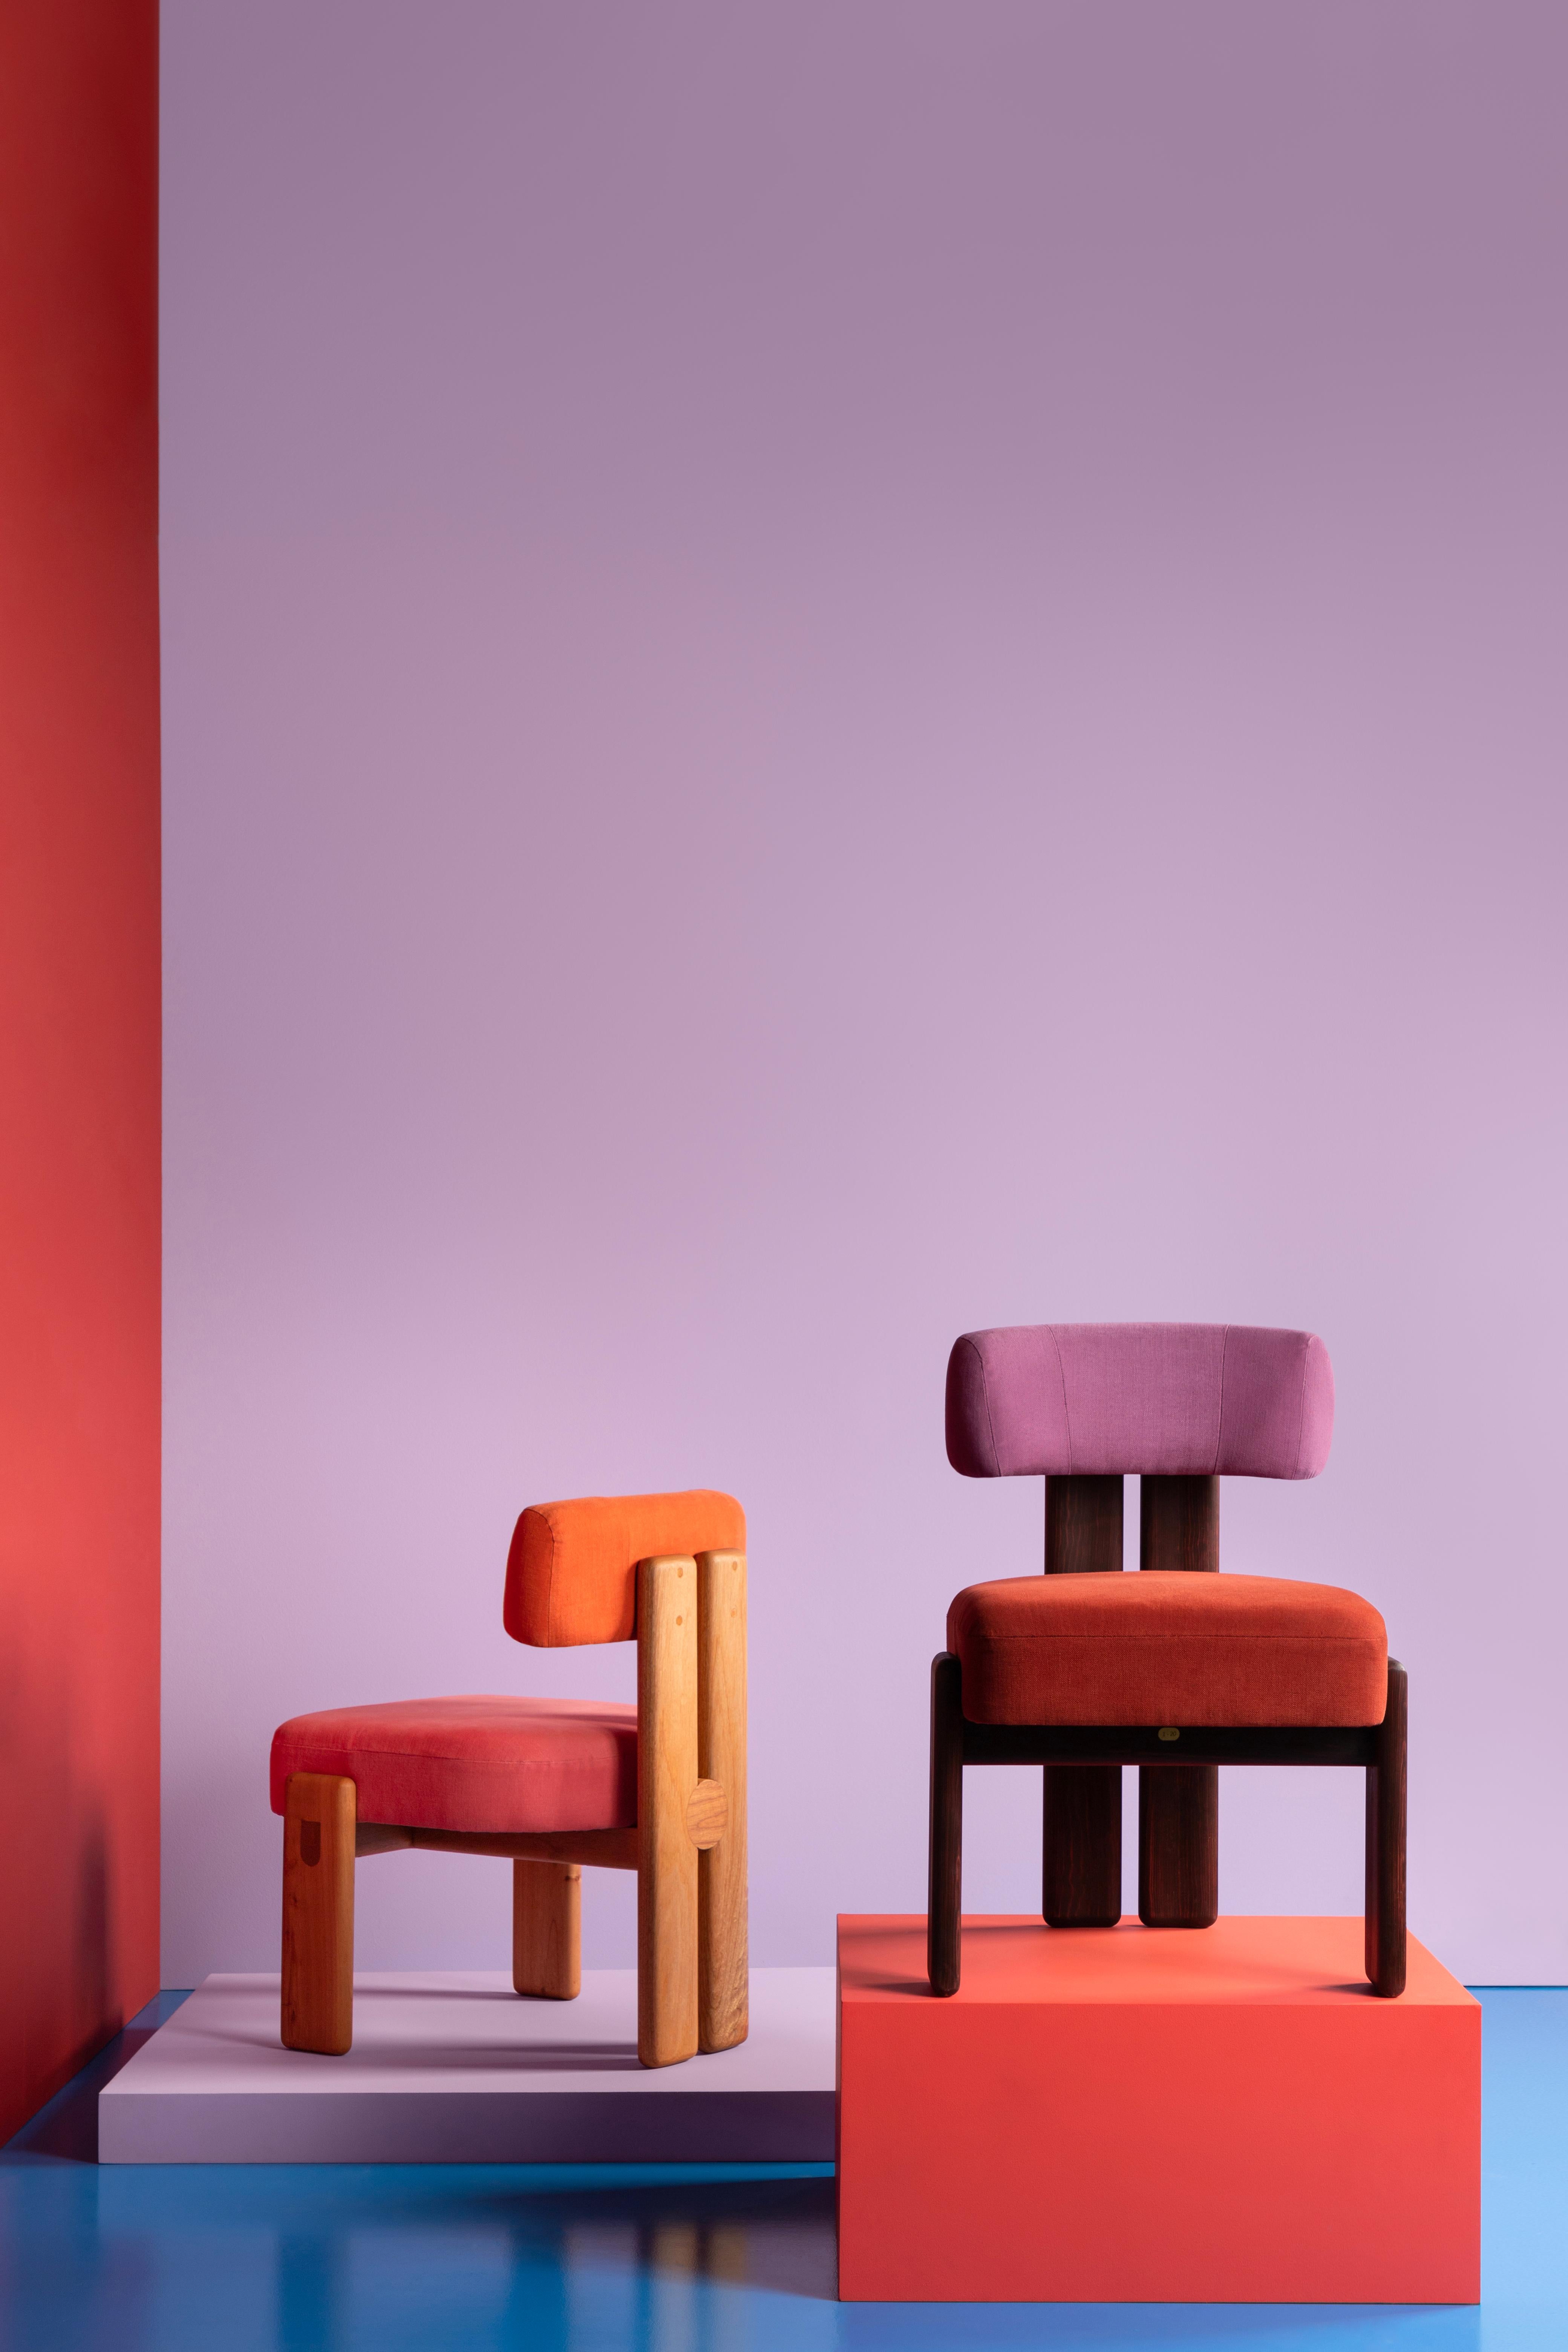 Inspiriert vom Werk der Bauhaus-Textilkünstlerin Anni Albers ist diese Version des nach ihr benannten de la paz-Stuhls eine Erkundung des Einsatzes von Farbe durch Collaboration.
MAYE, Experten für Farbmetrik, haben sich von zwei Werken Annis